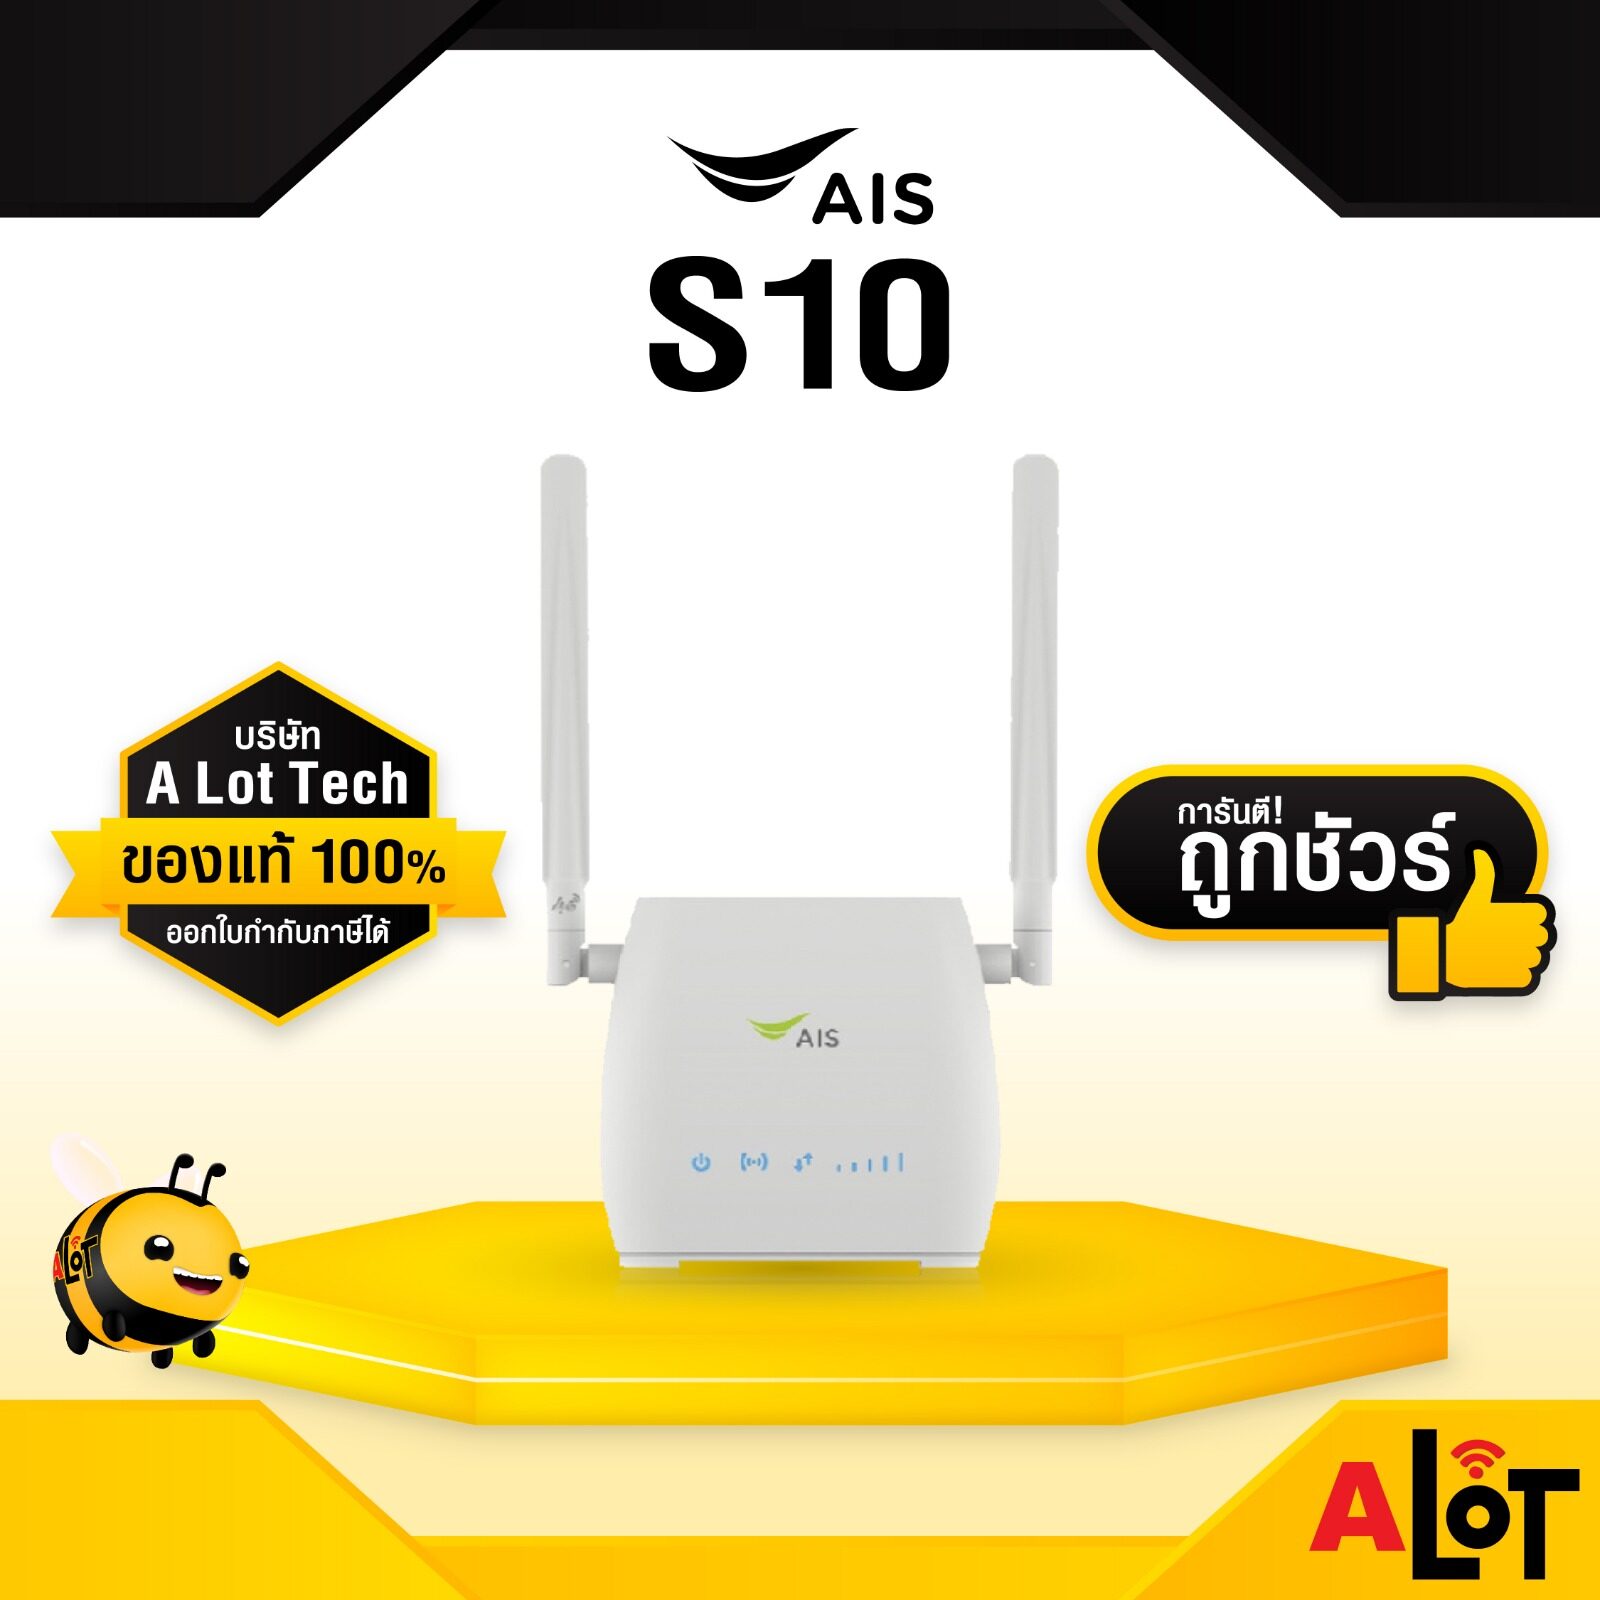 ข้อมูลเพิ่มเติมของ [ ของแท้ AIS ] AIS 4G Home Wifi Router RU S10 ตัวกระจายสัญญาณ อินเตอร์เน็ต ใส่ซิมได้ทุกค่าย ออกใบกำกับภาษีได้ #alot